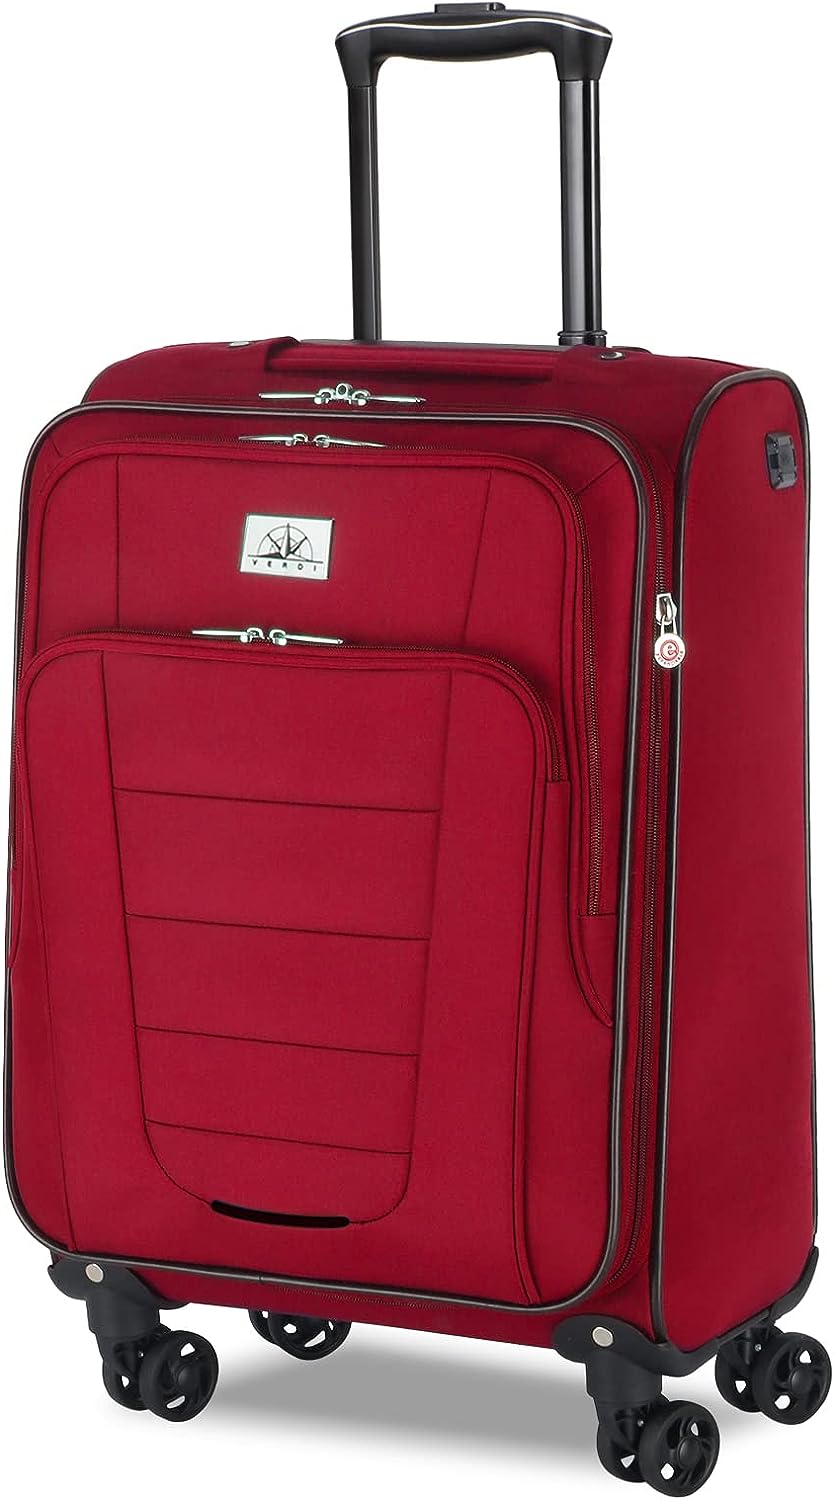 10. The Verdi Travel Carry-on Spinner Luggage for Seniors 